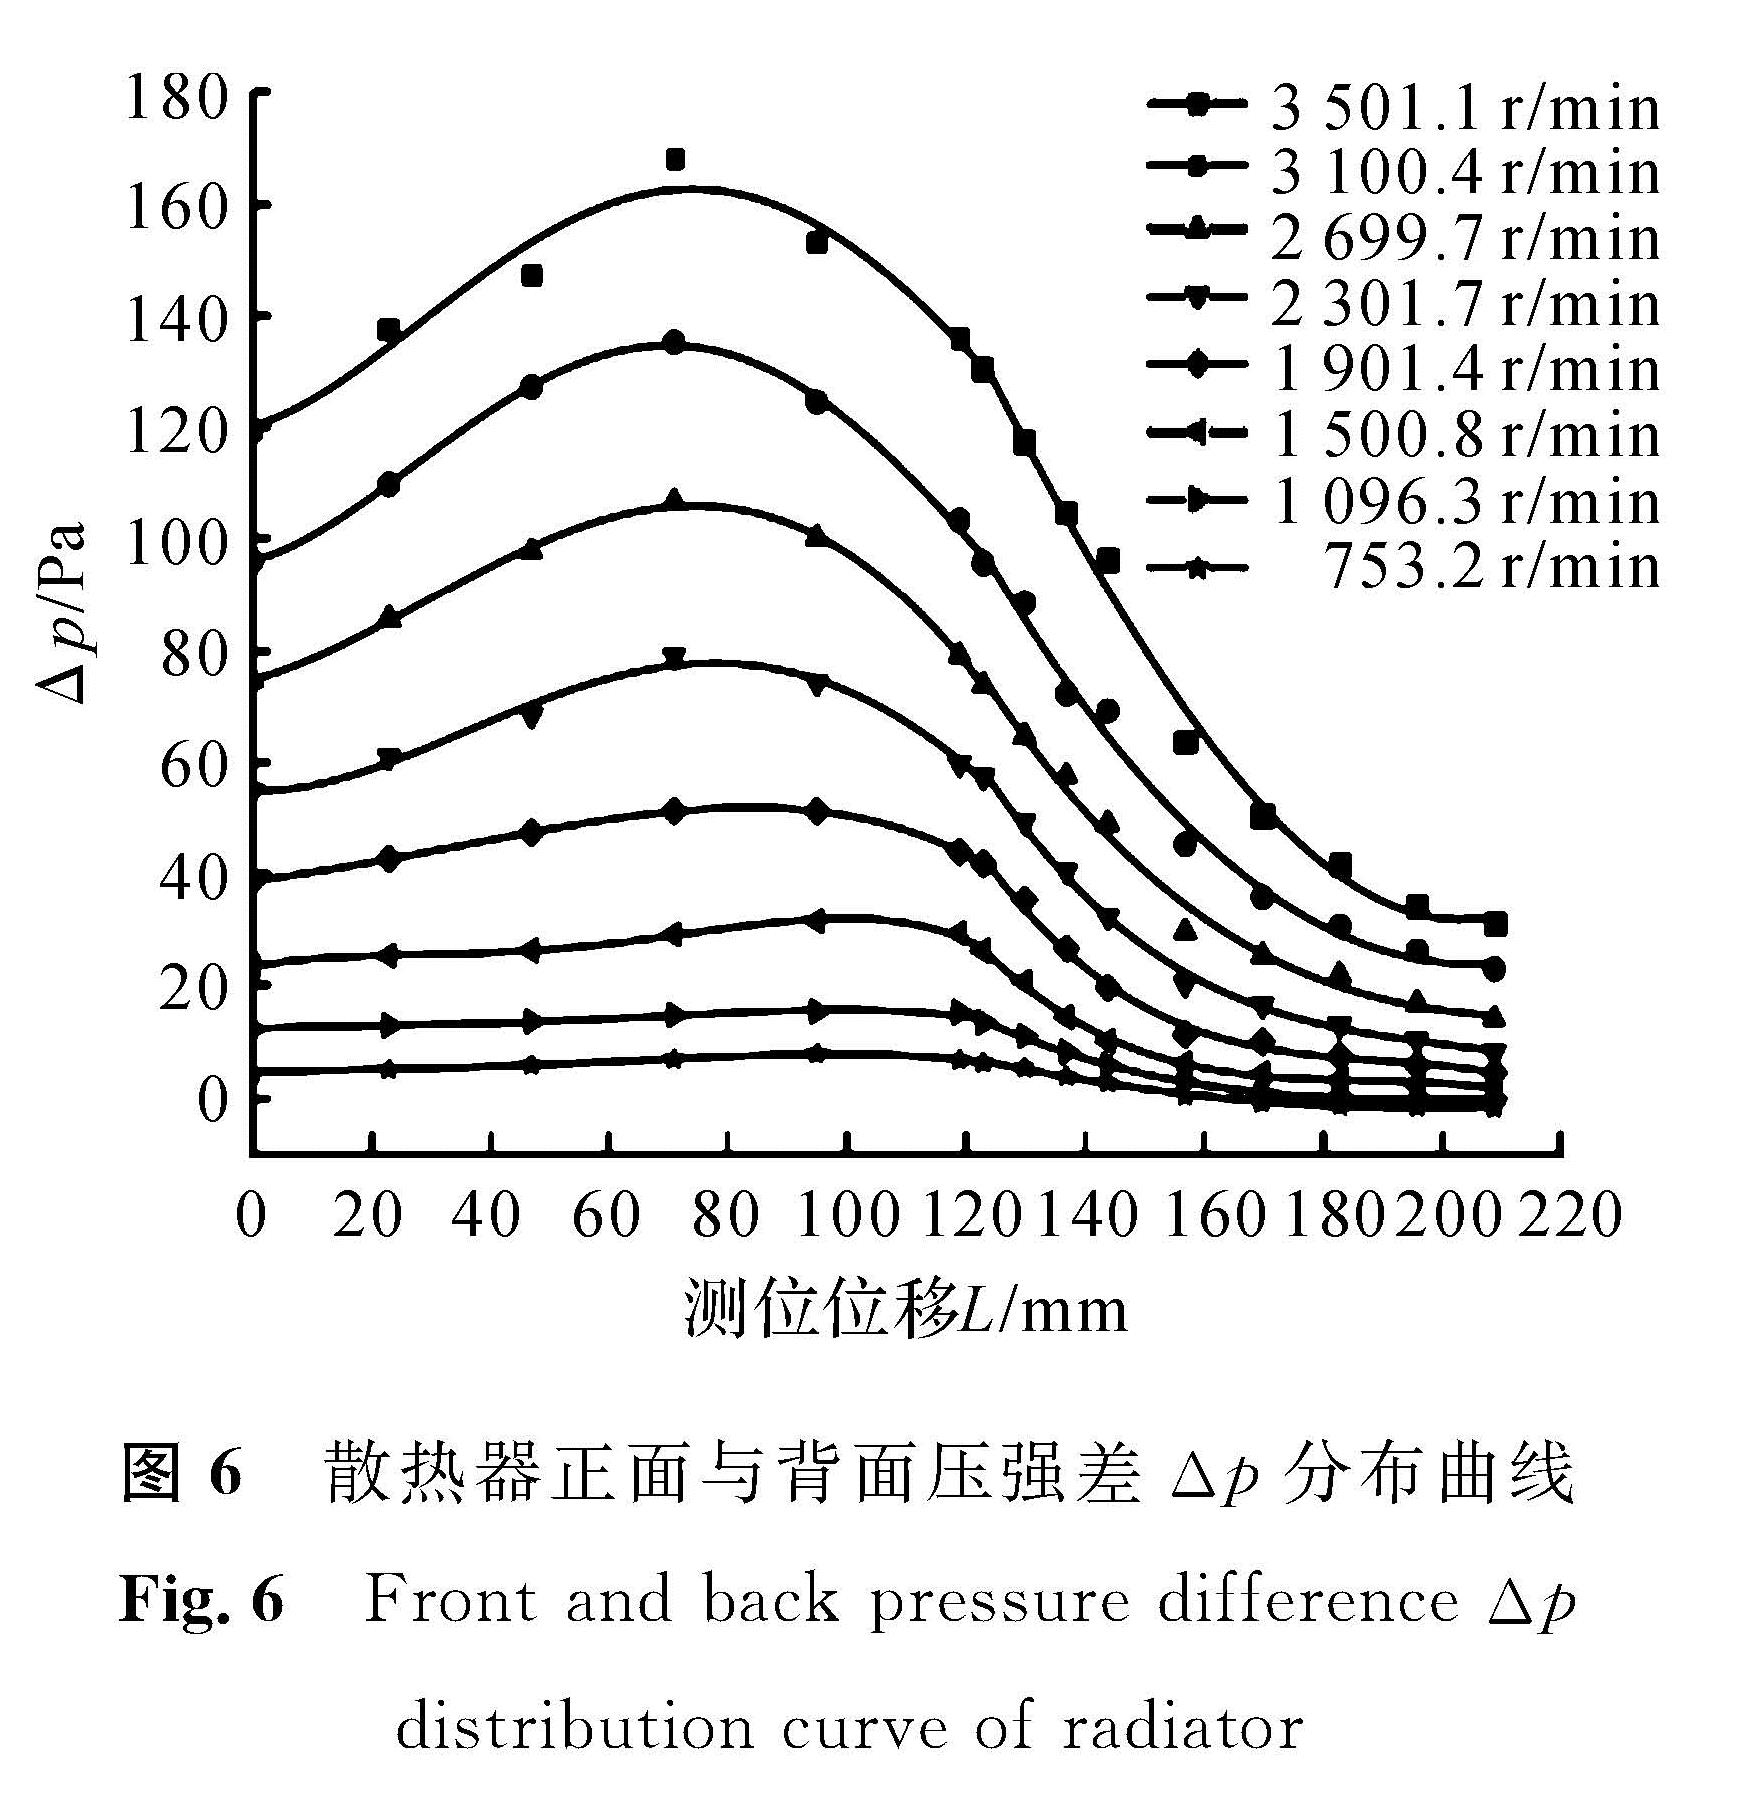 图6 散热器正面与背面压强差Δp分布曲线<br/>Fig.6 Front and back pressure difference Δp distribution curve of radiator